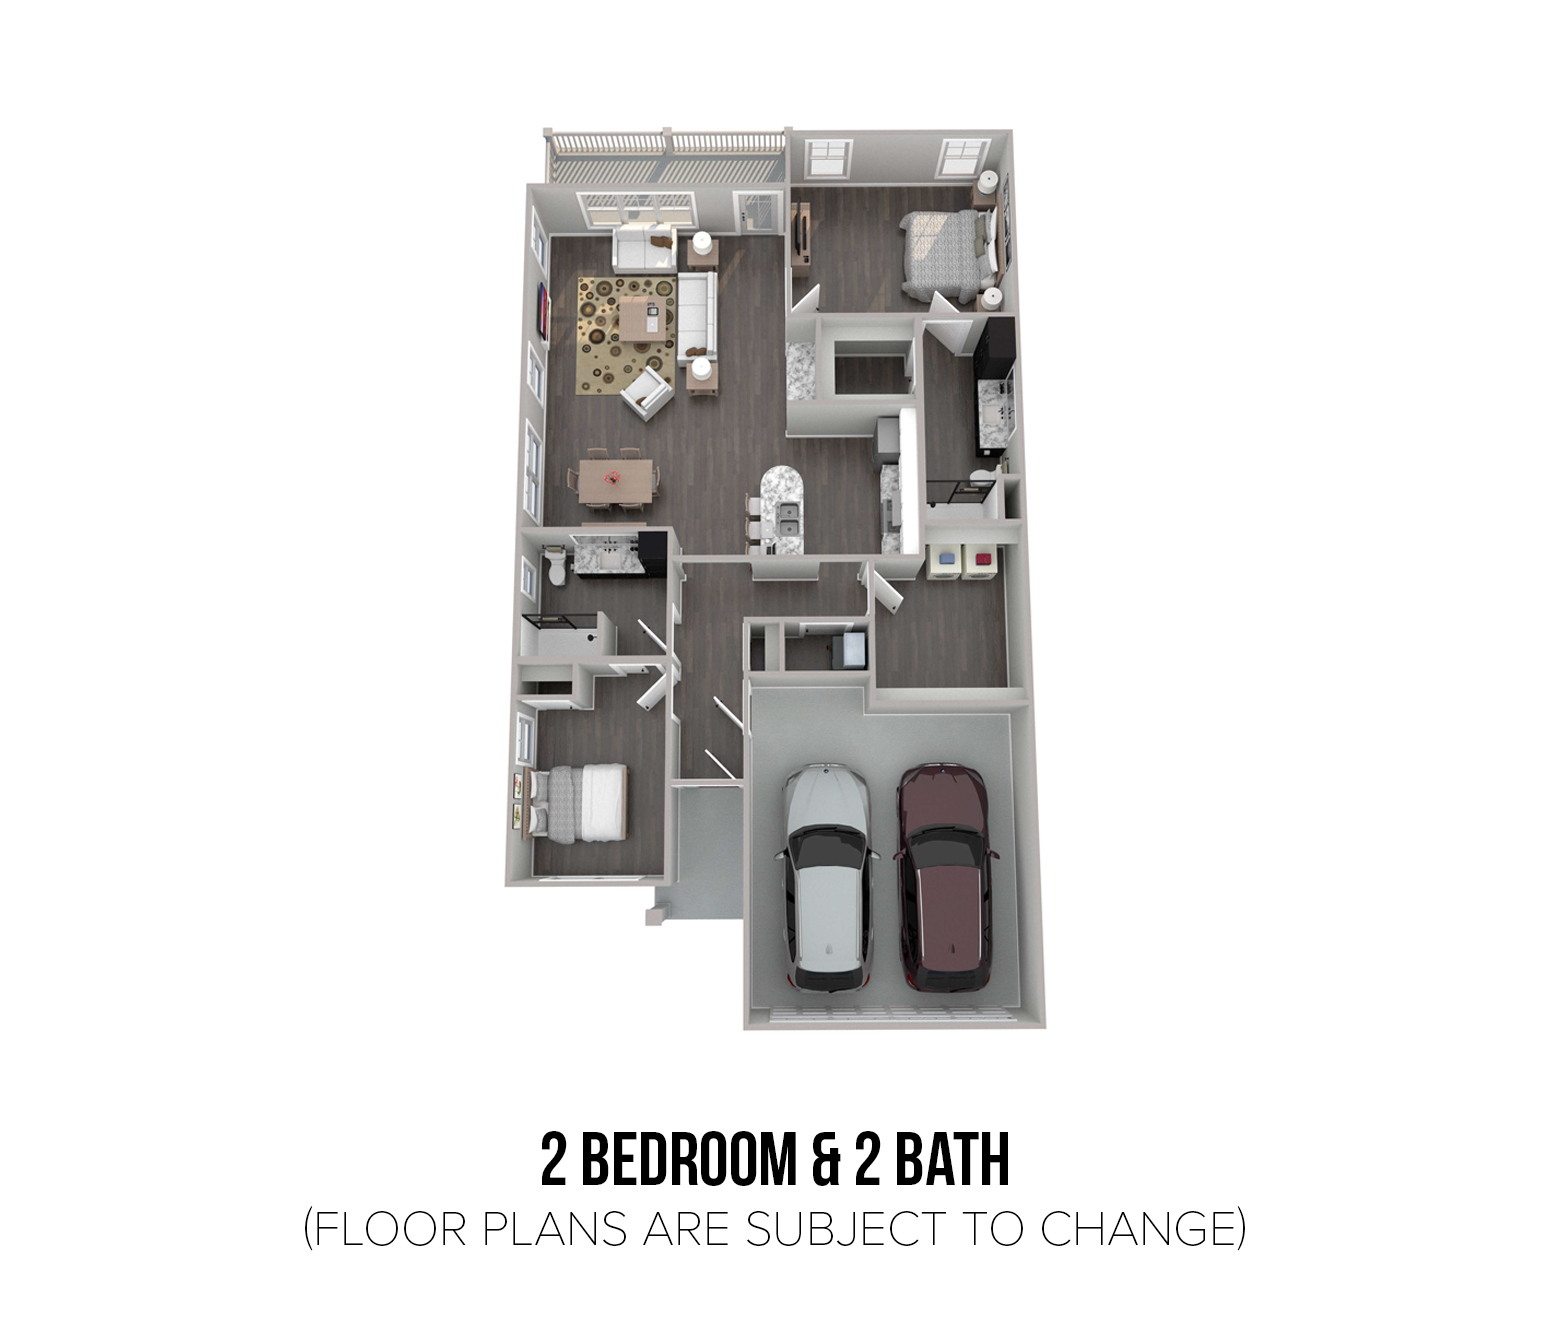 Floorplan - 2 Bedroom & 2 Bath image